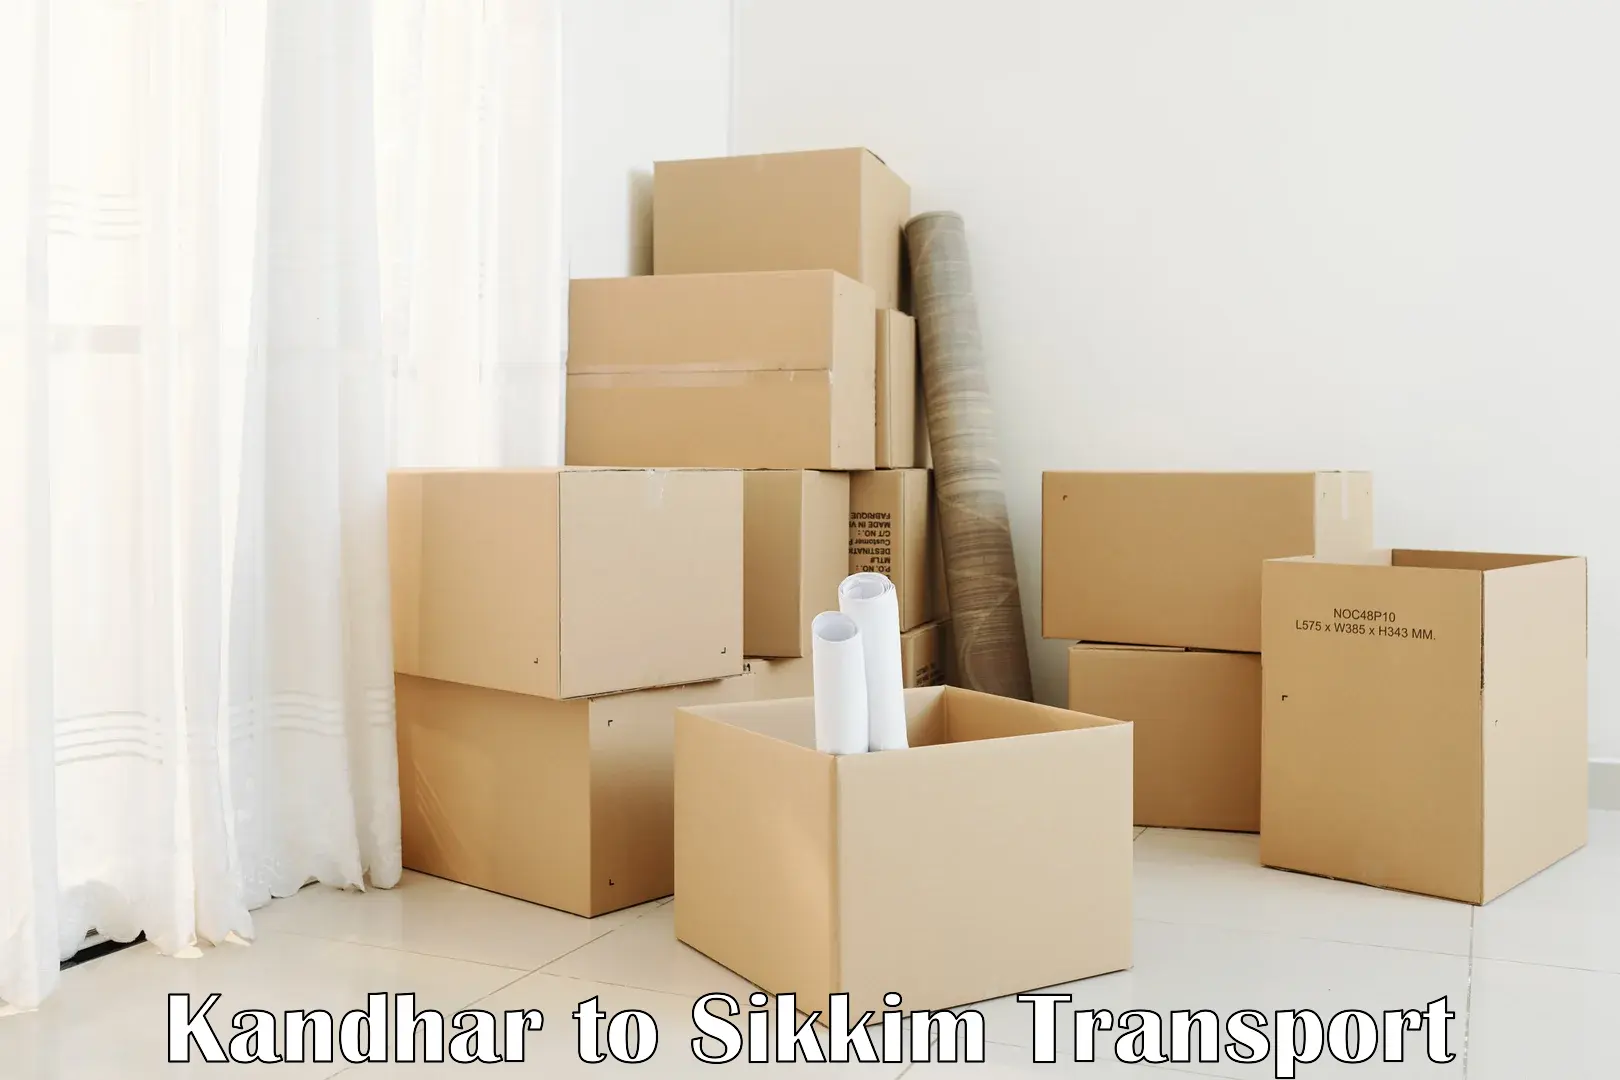 Luggage transport services Kandhar to Mangan